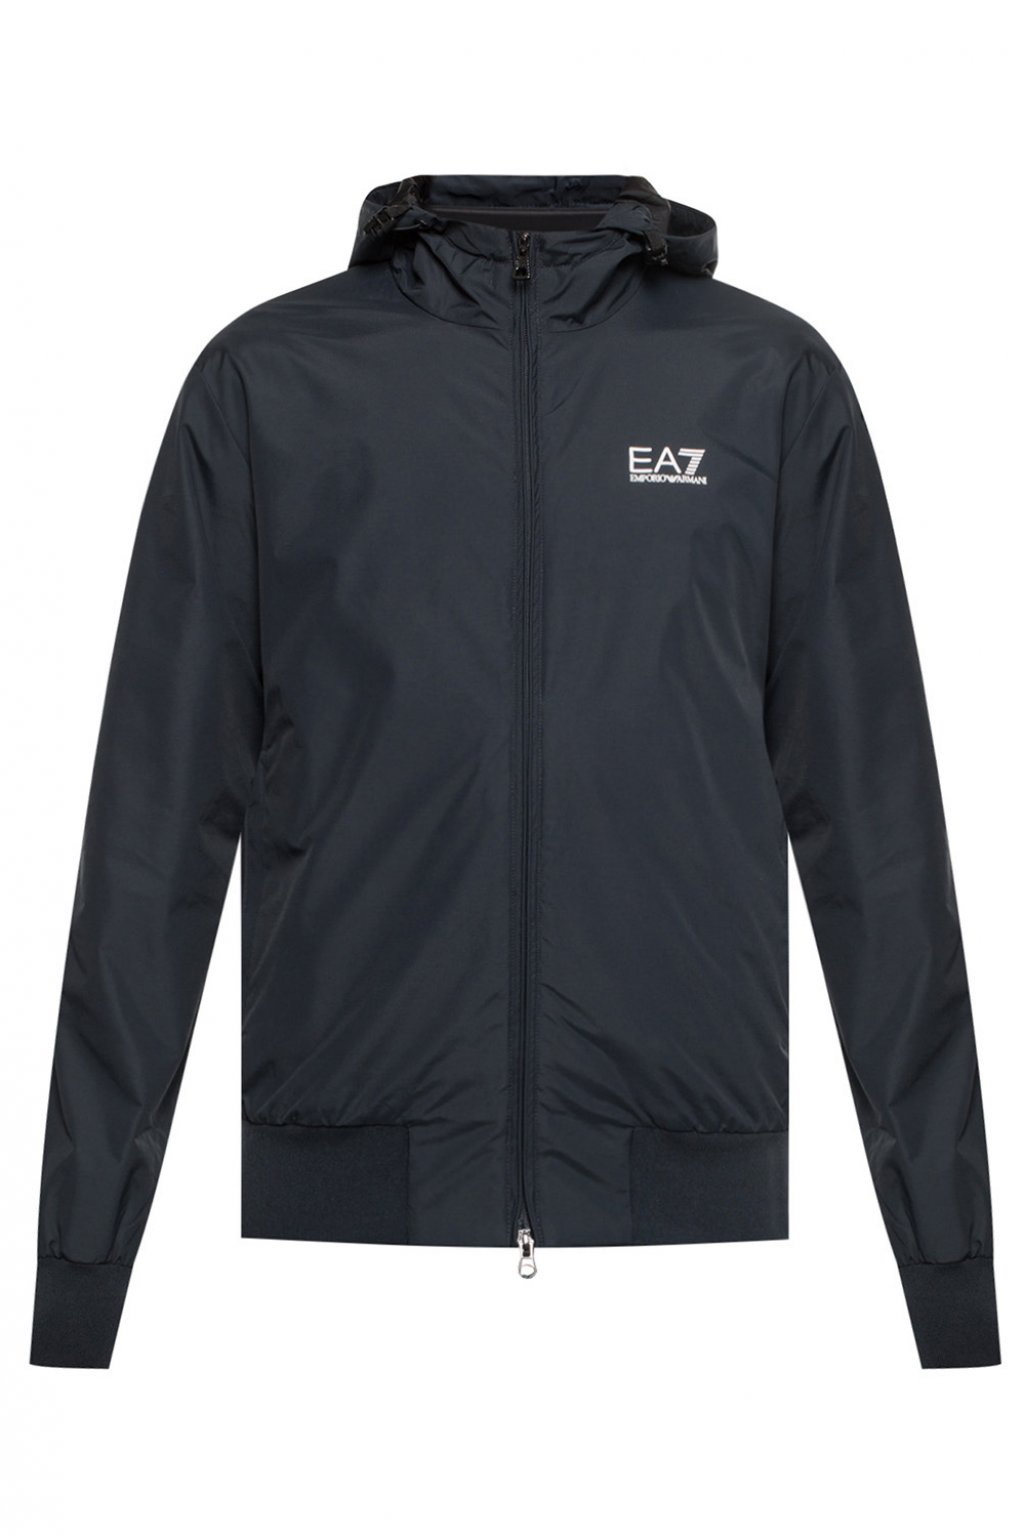 Branded rain jacket EA7 Emporio Armani 